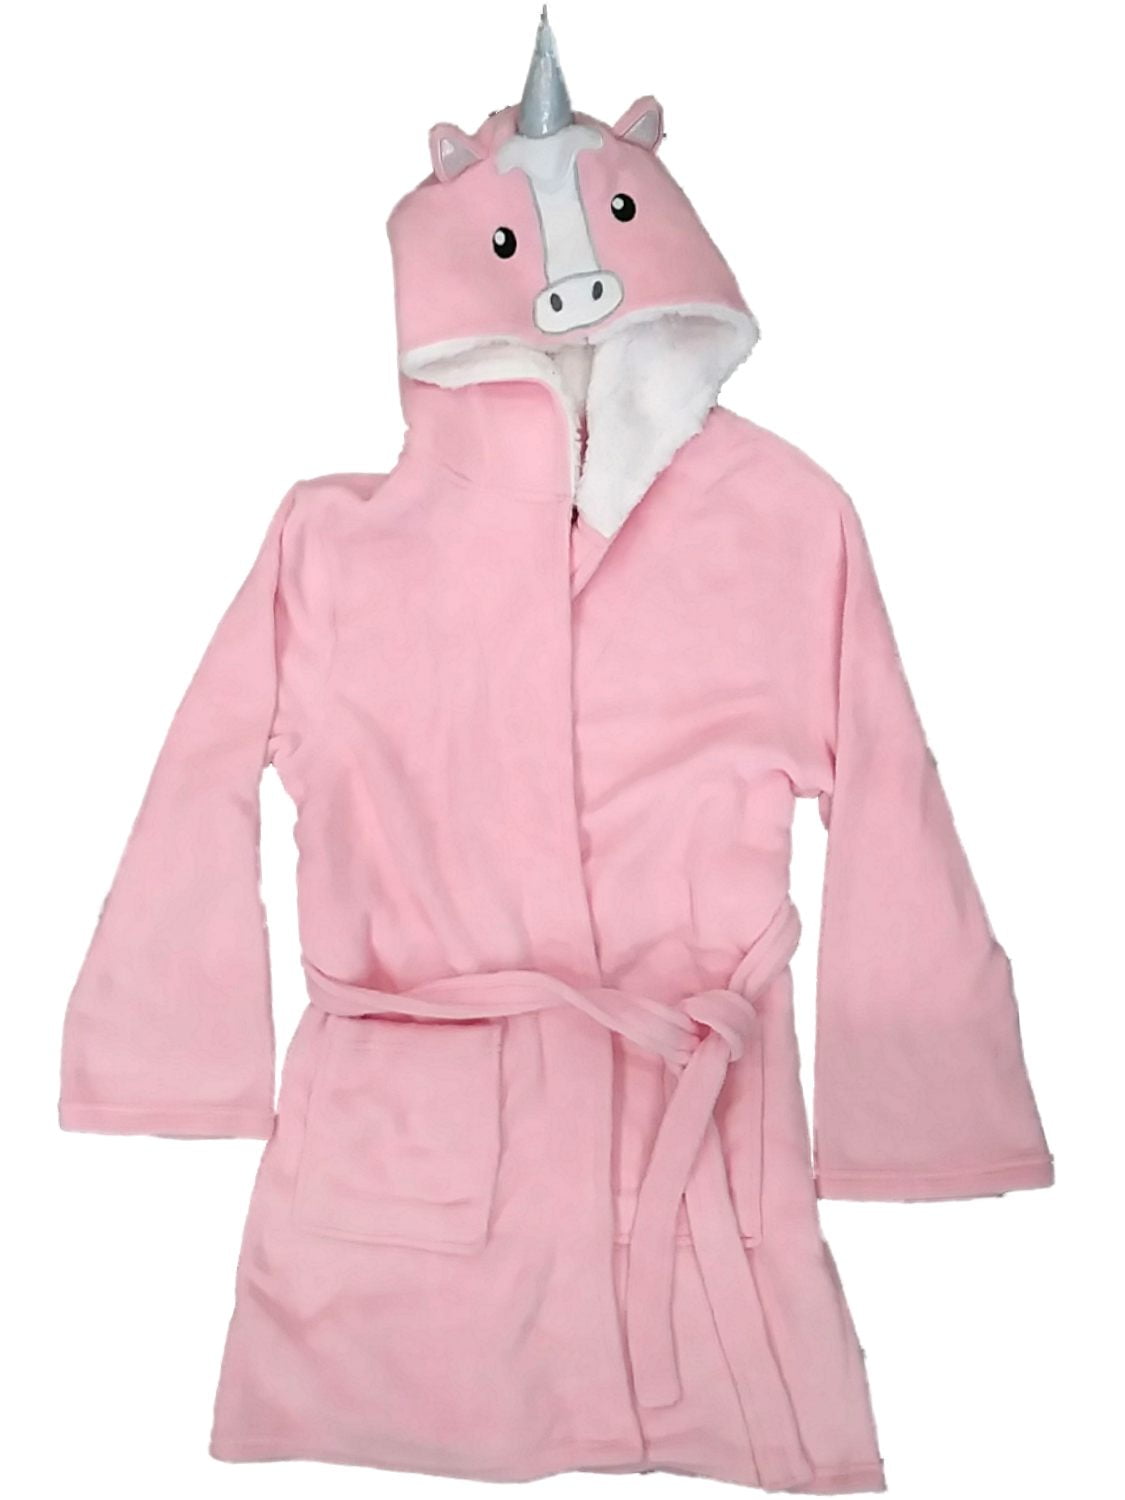 Unisex Adult/Kids Unicorn Robe Hooded Animal Bathrobe for Women Men Gift for Birthday Christmas Girls Robe 